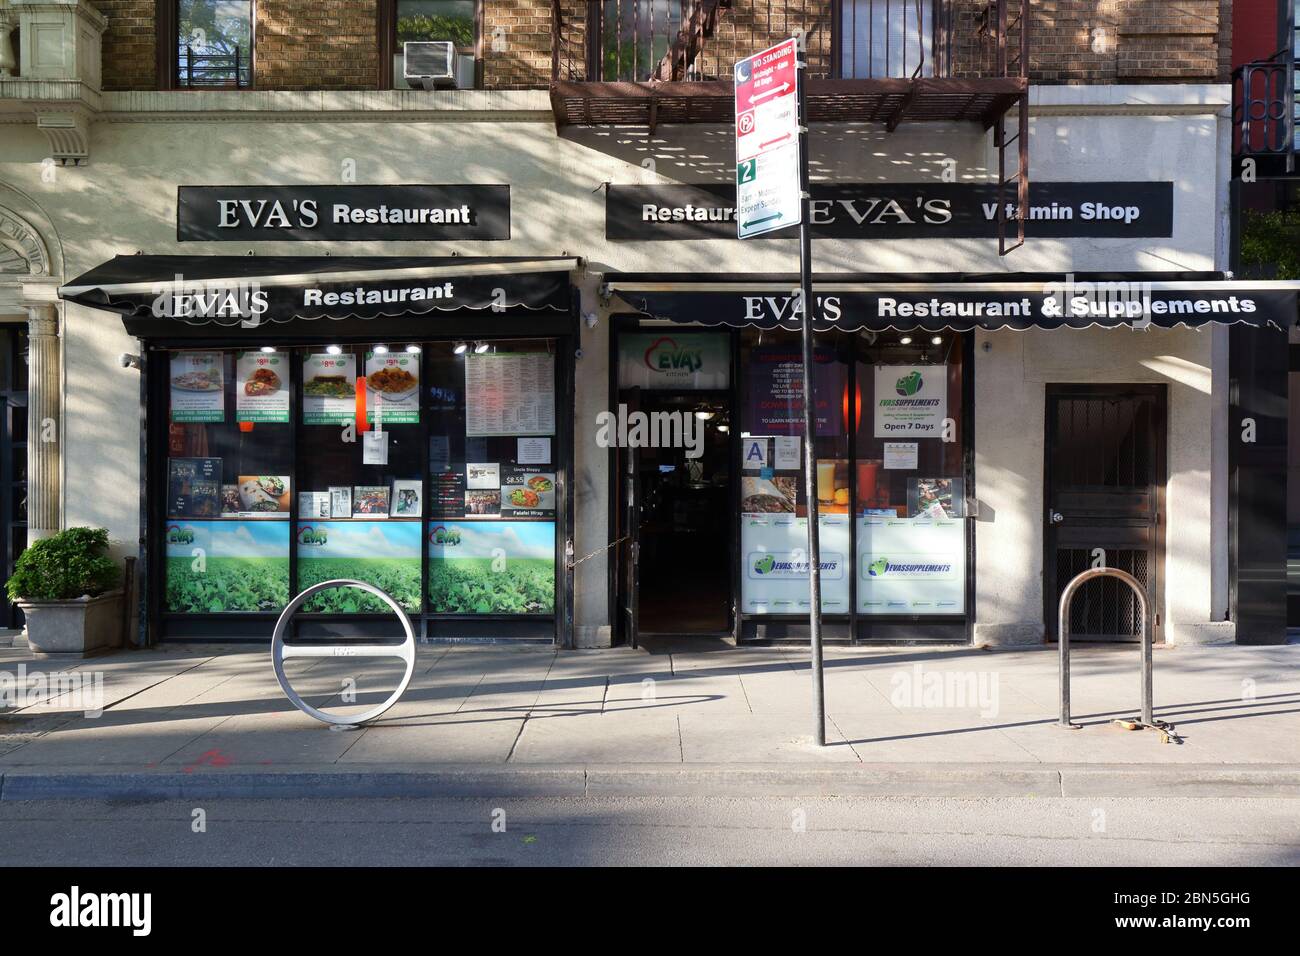 Eva's Kitchen, 11 West 8. Street, New York, NYC Foto von einem Gesundheitsrestaurant im Stadtteil Greenwich Village in Manhattan. Stockfoto